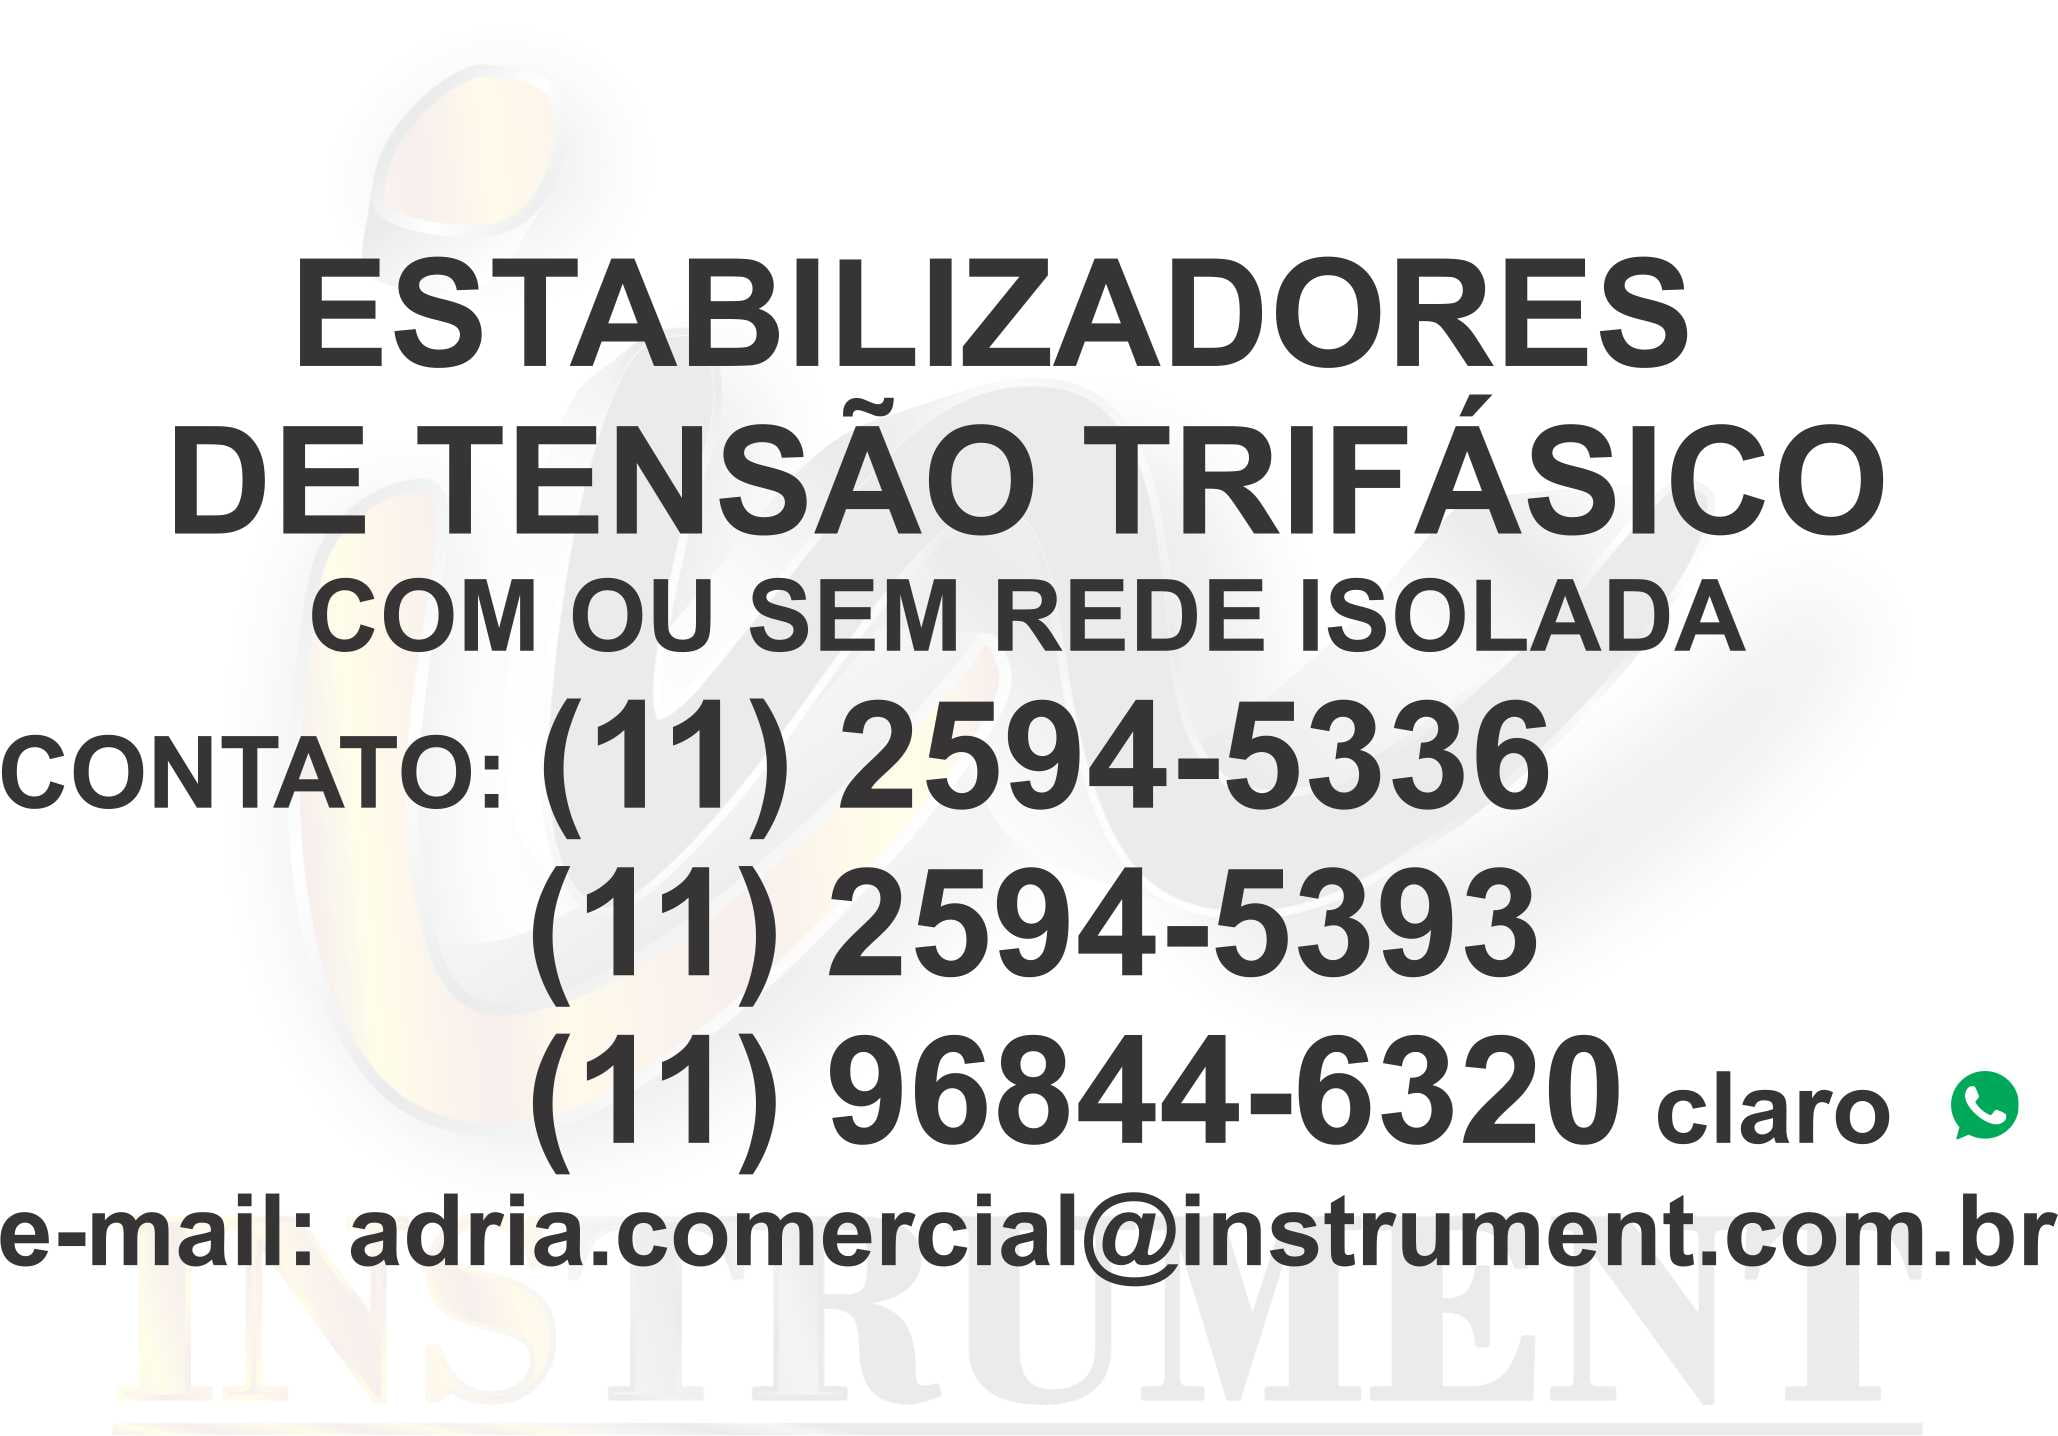 ESTABILIZADOR DE TENSÃO TRIFÁSICO